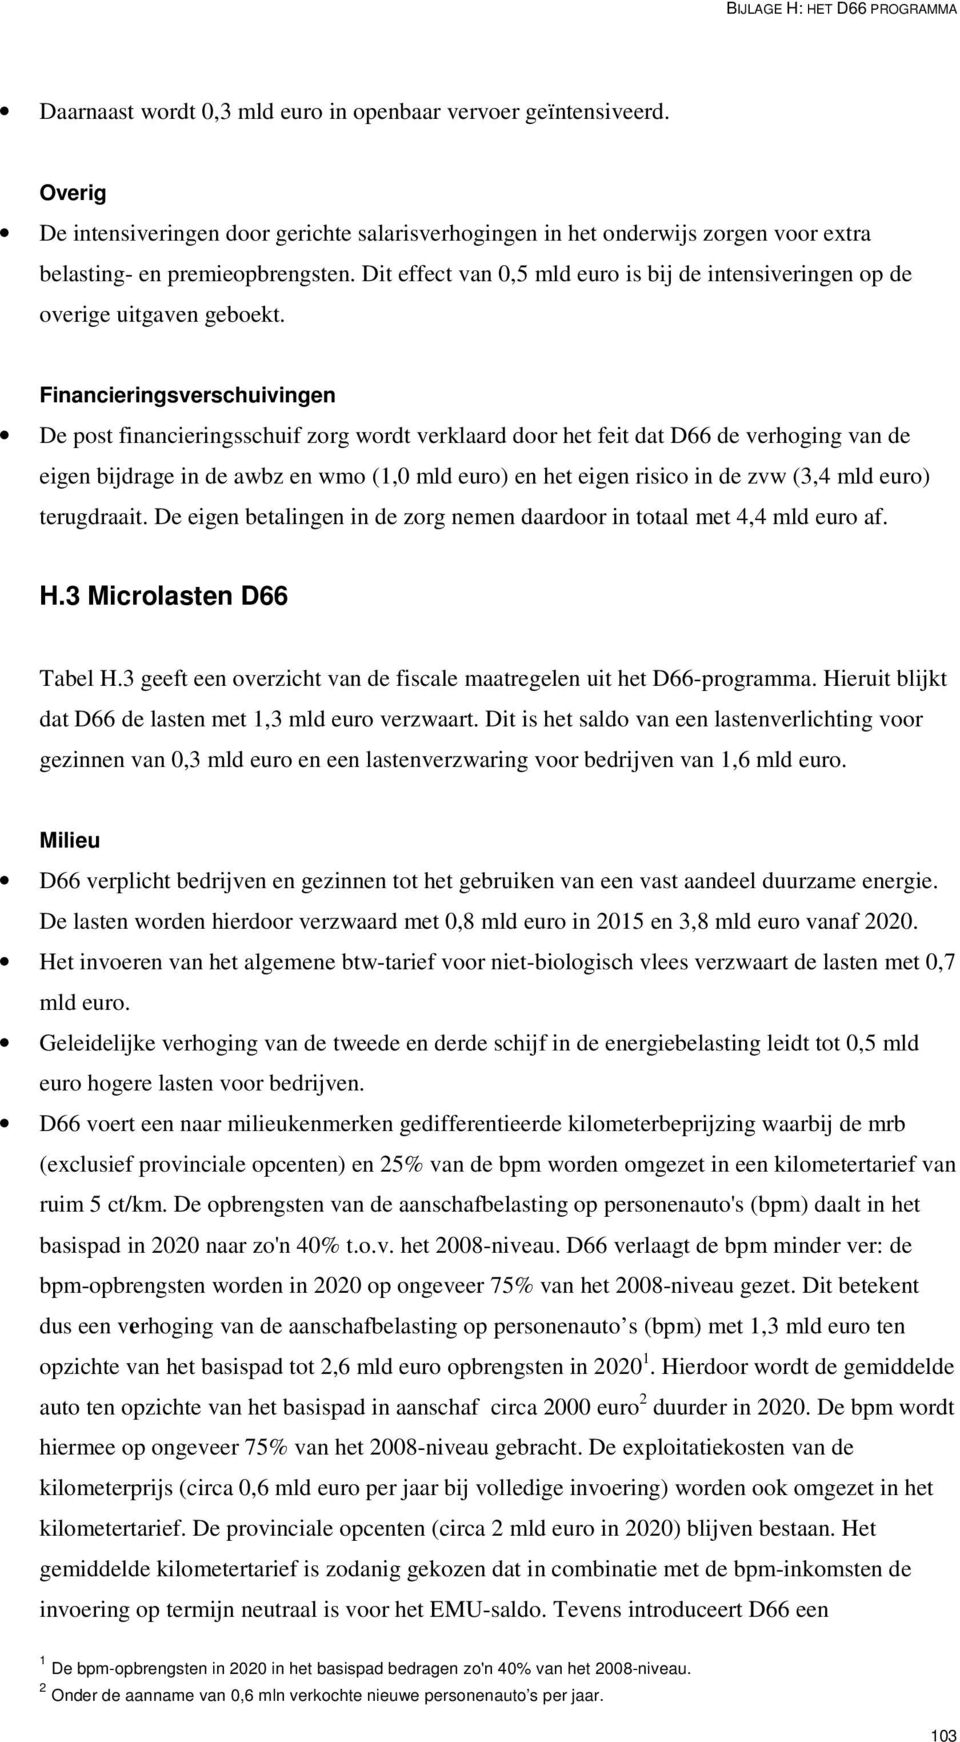 Financieringsverschuivingen De post financieringsschuif zorg wordt verklaard door het feit dat D66 de verhoging van de eigen bijdrage in de awbz en wmo (1,0 mld euro) en het eigen risico in de zvw